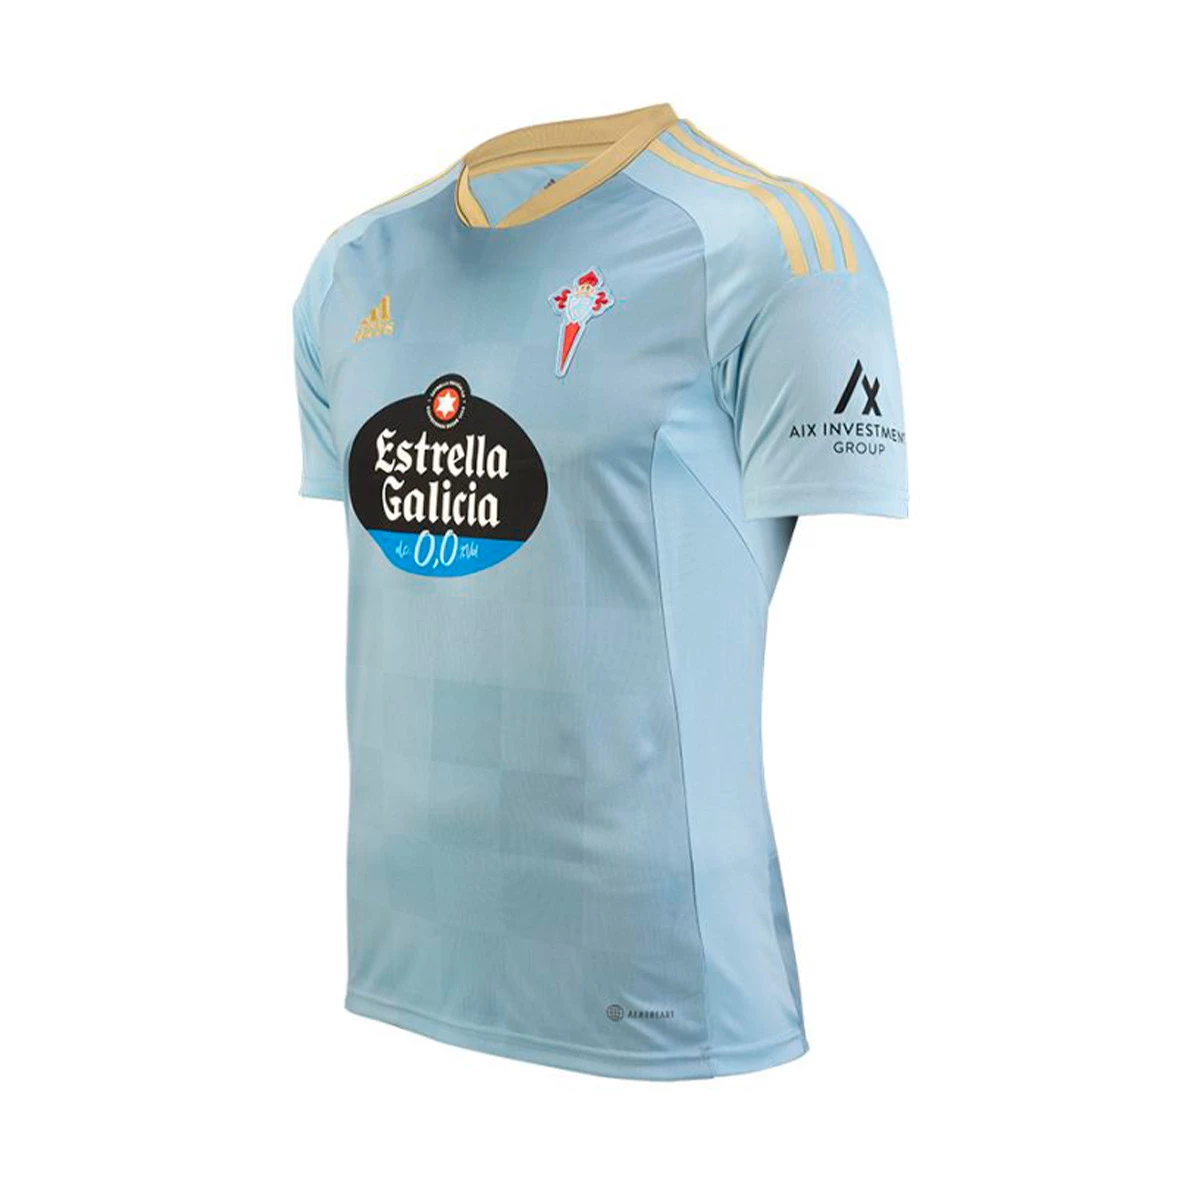 Camiseta adidas Celta Vigo 2021 2022 azul celeste